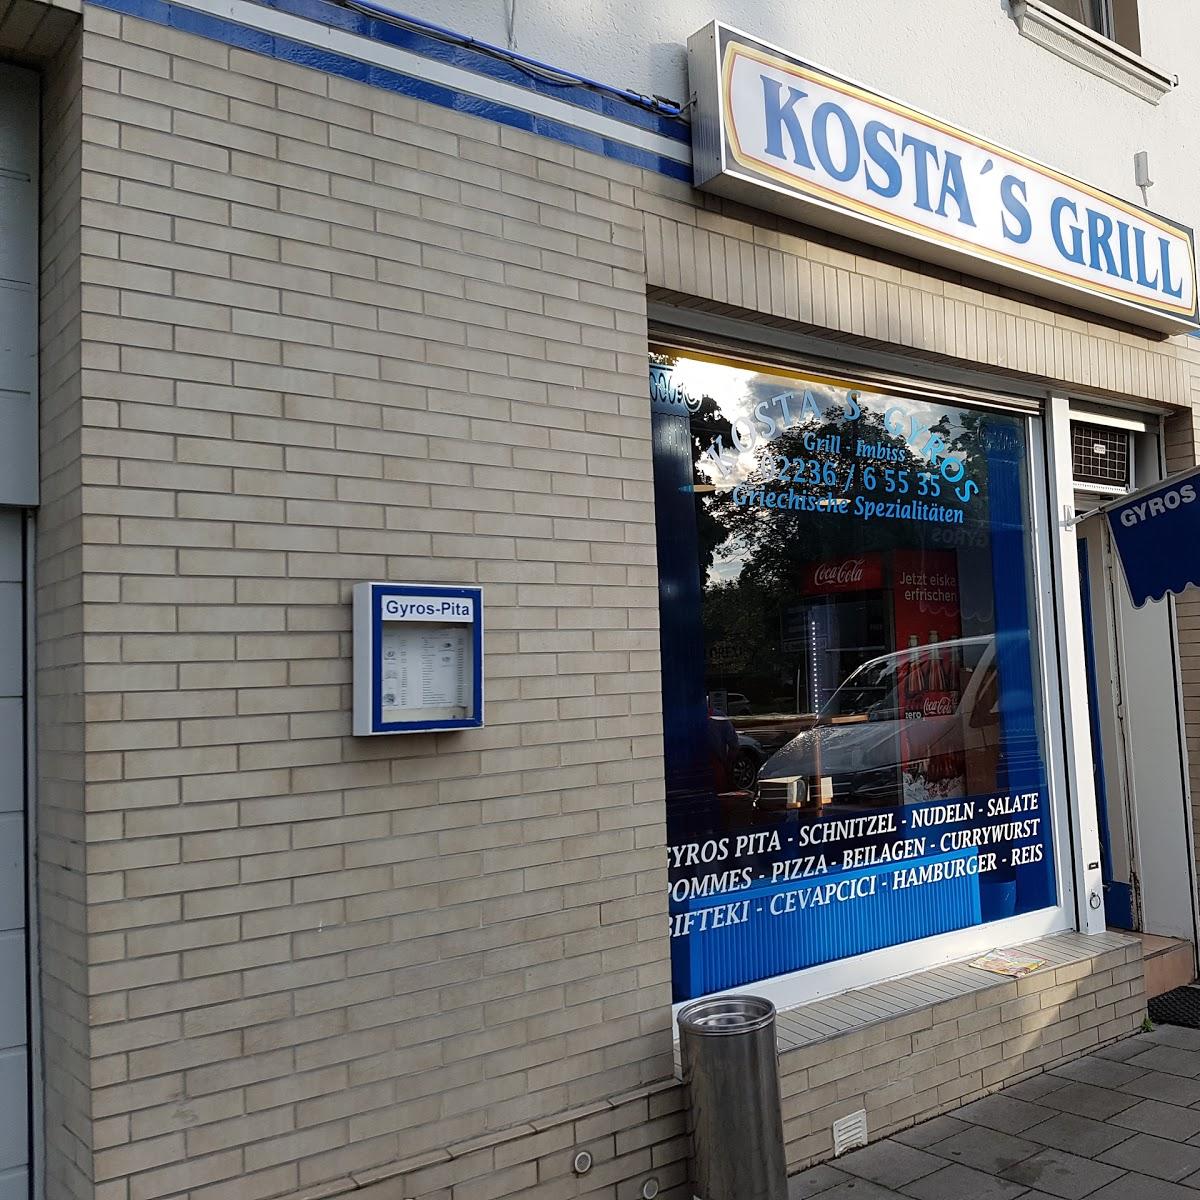 Restaurant "Kosta